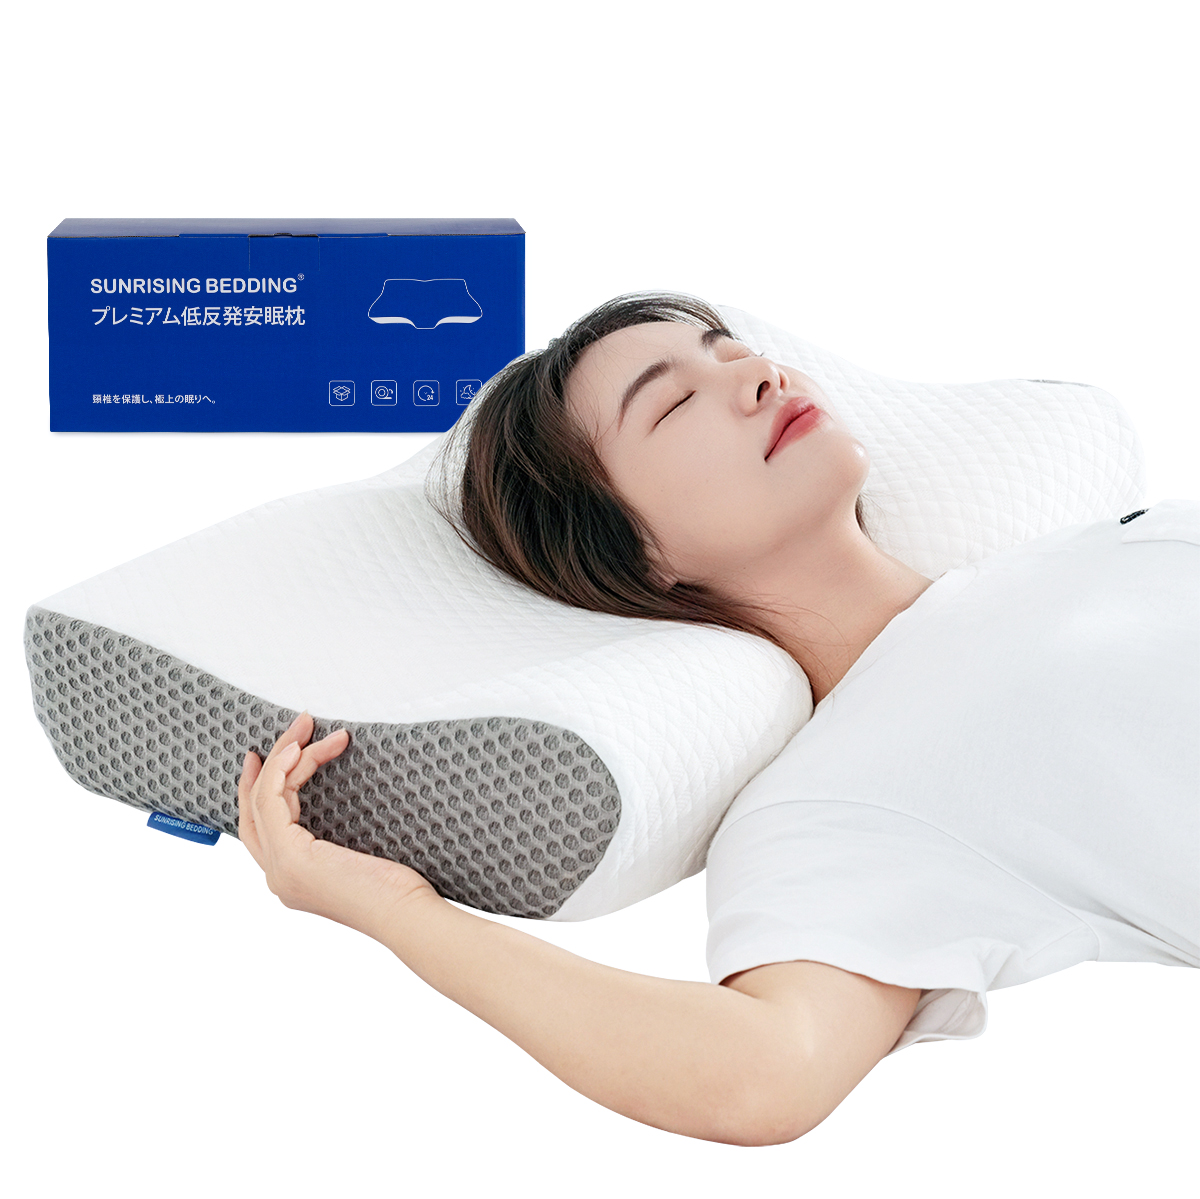 枕 肩こり 首こり 低反発枕 健康枕 安眠枕 いびき対策 快眠枕 高さ調節